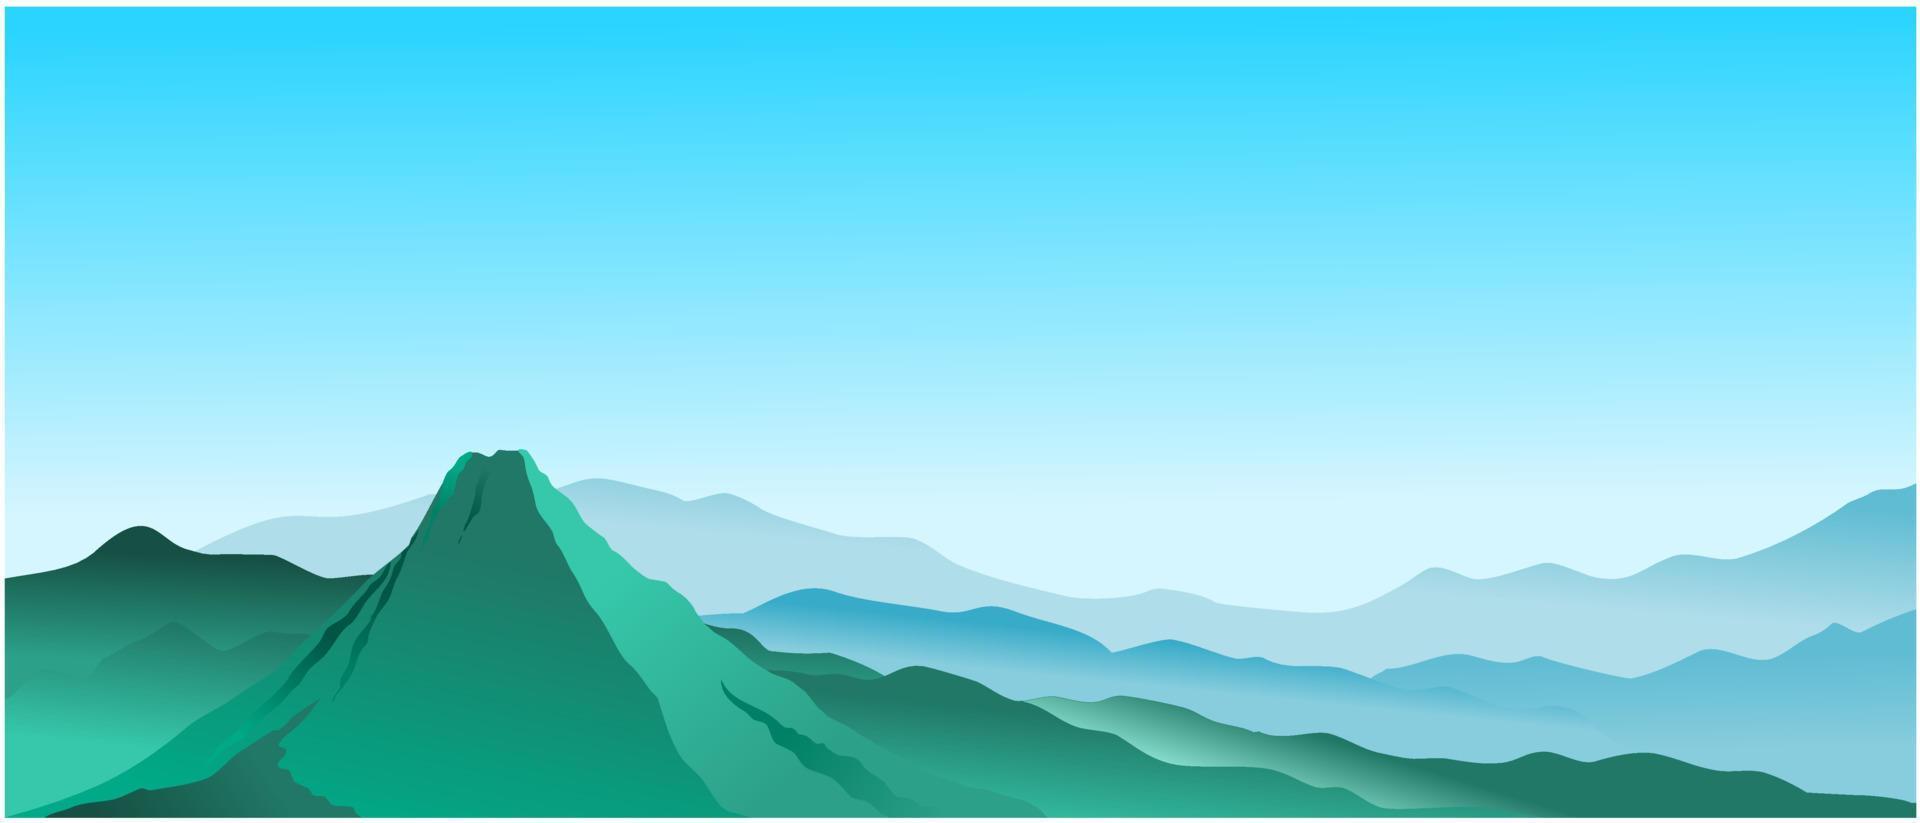 blue mountain ridge, silhouette valley mountain sky vector